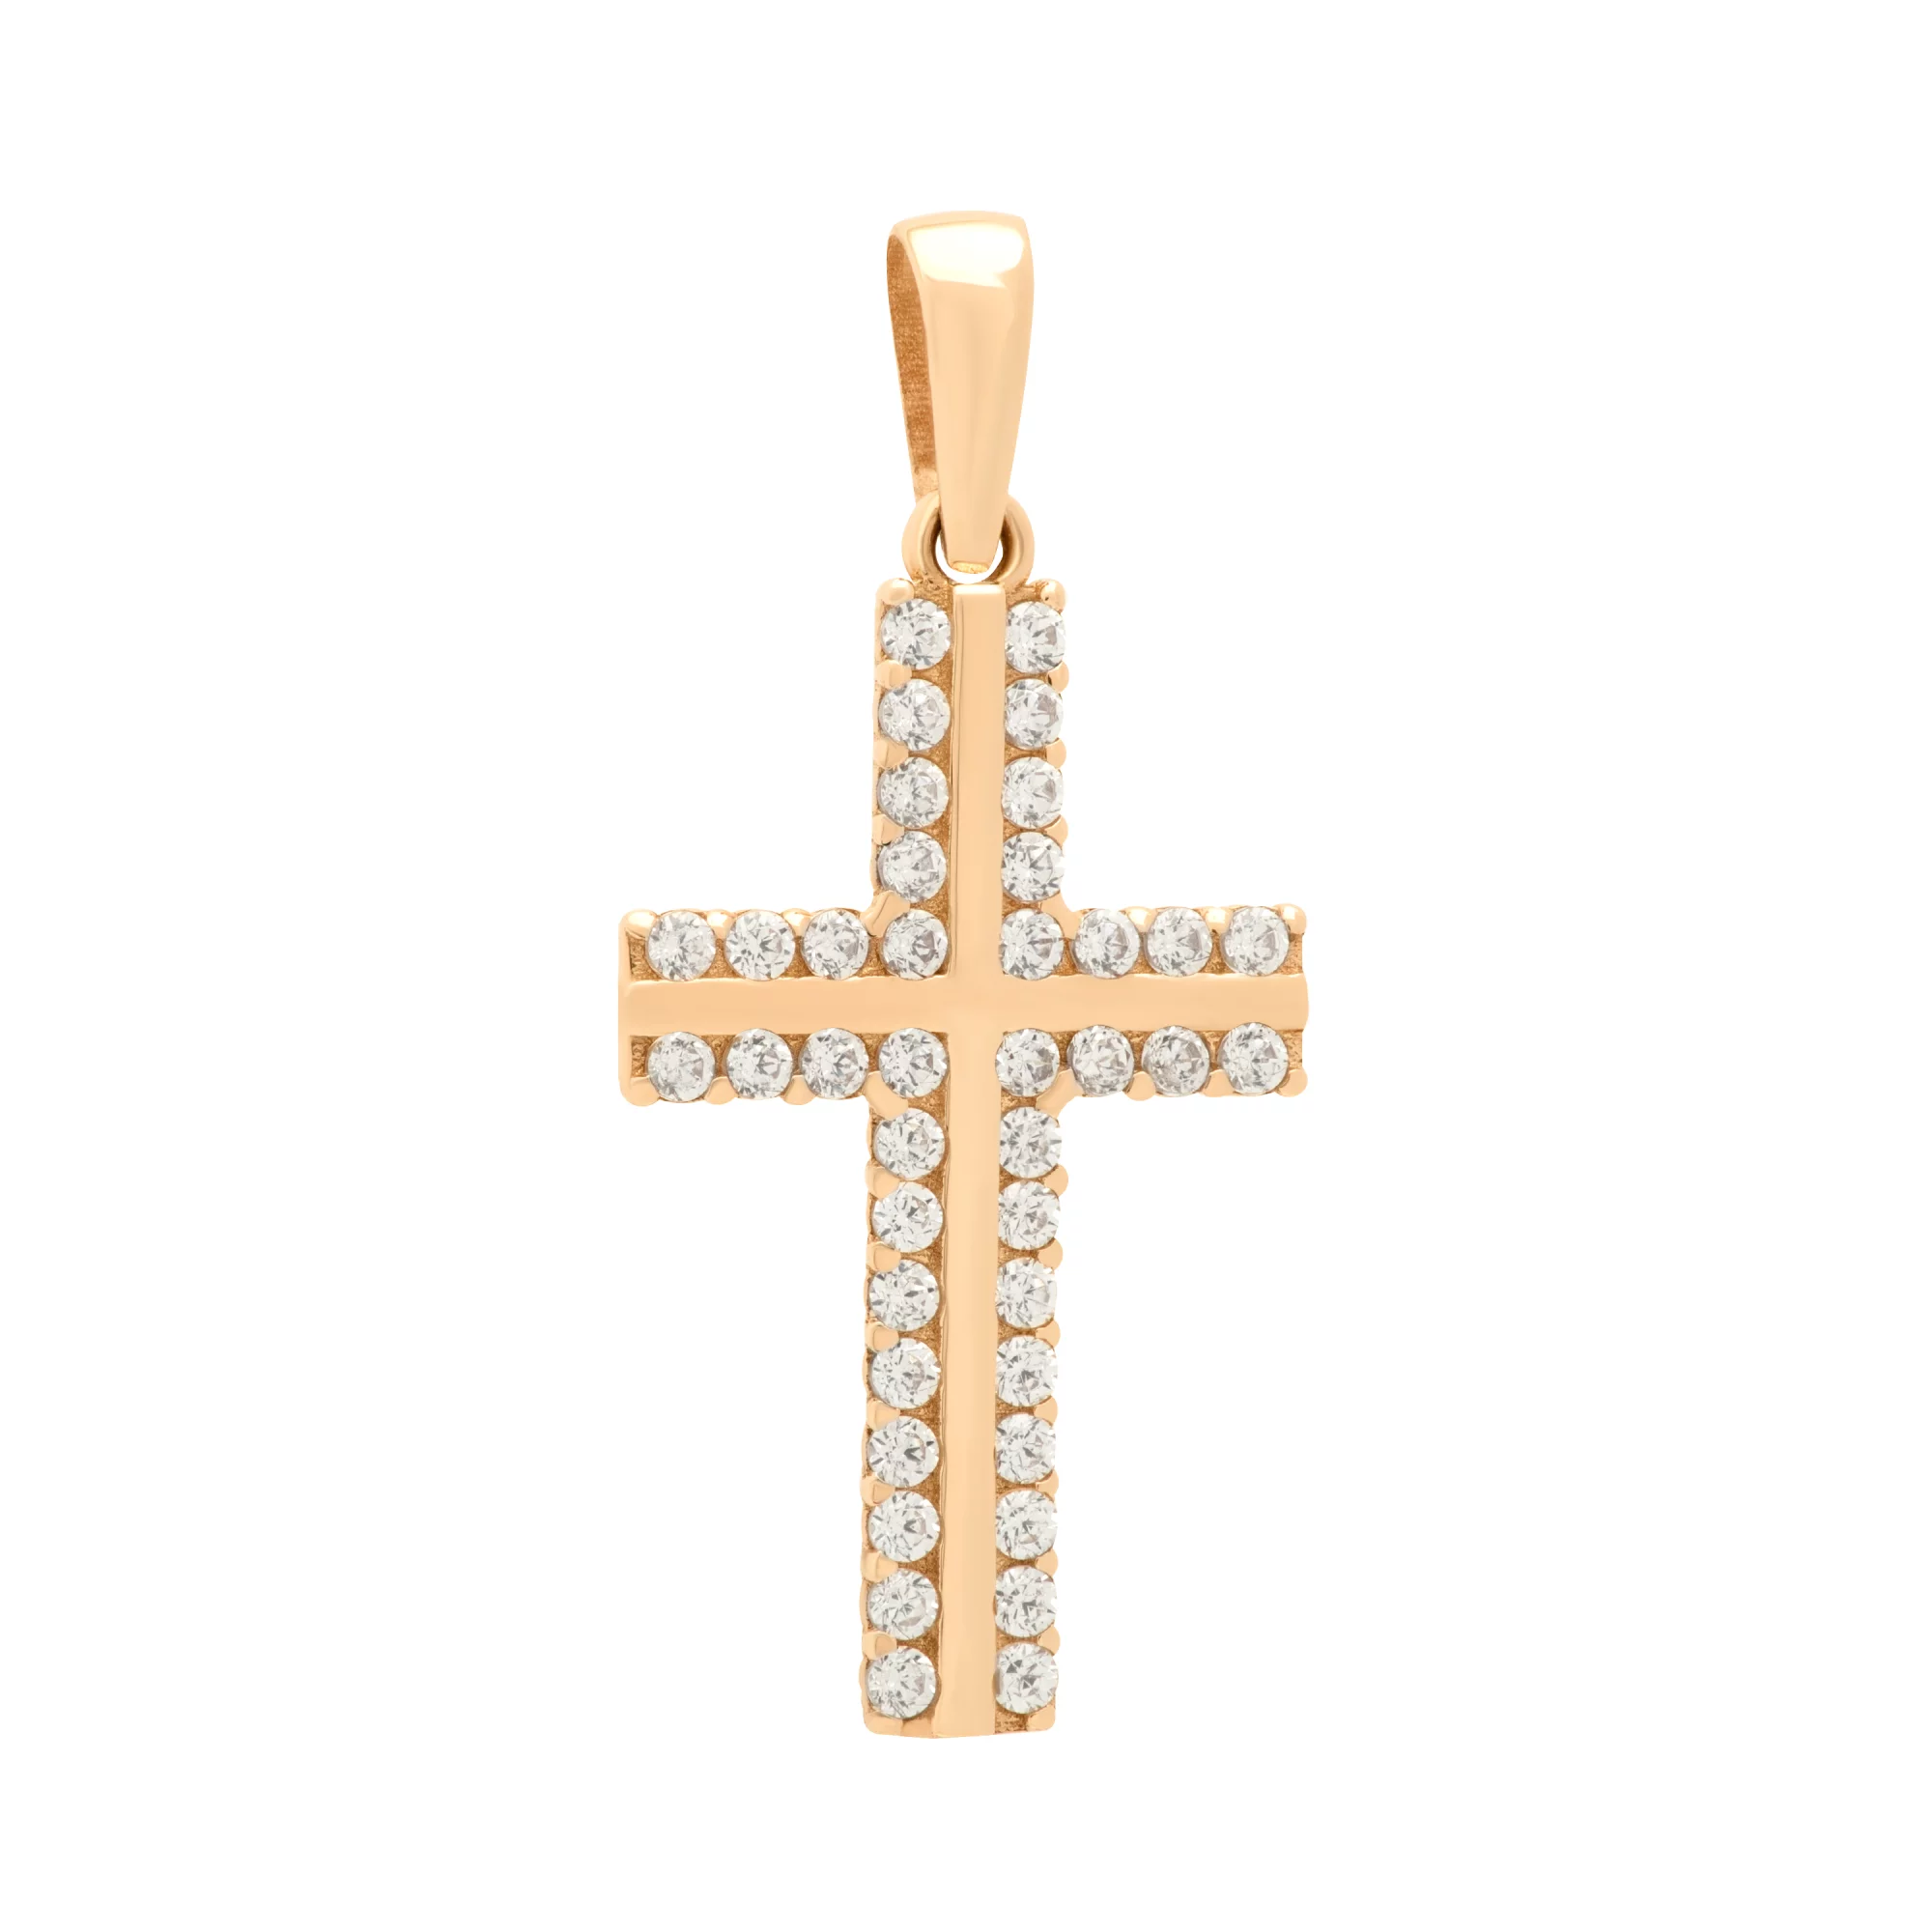 Декоративный золотой крестик с дорожкой фианитов - 1651511 – изображение 1